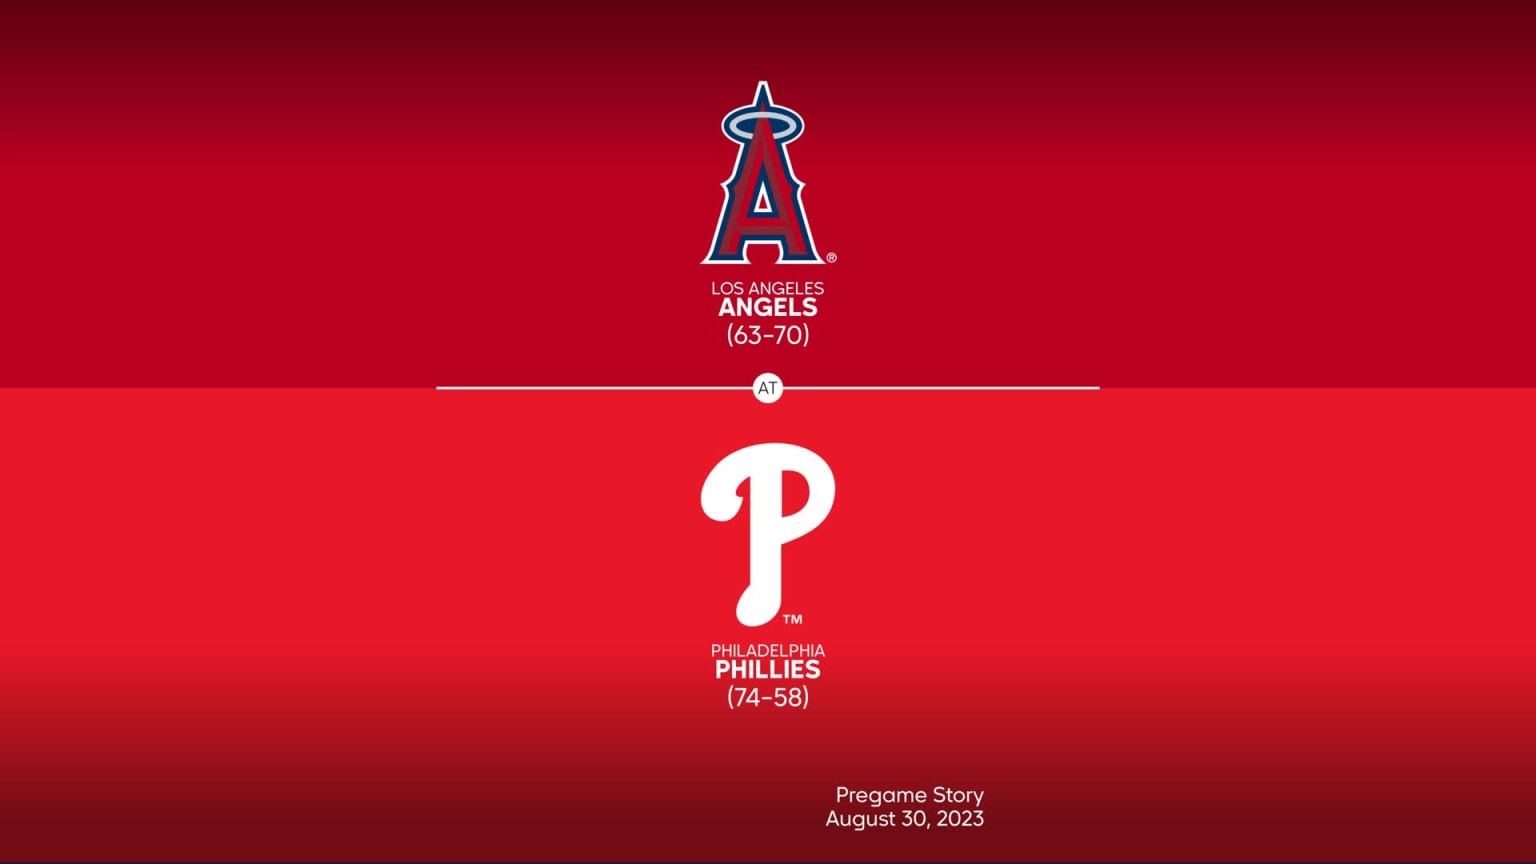 philadelphia phillies baseball wallpaper in 2023  Philadelphia phillies  baseball, Baseball wallpaper, Phillies